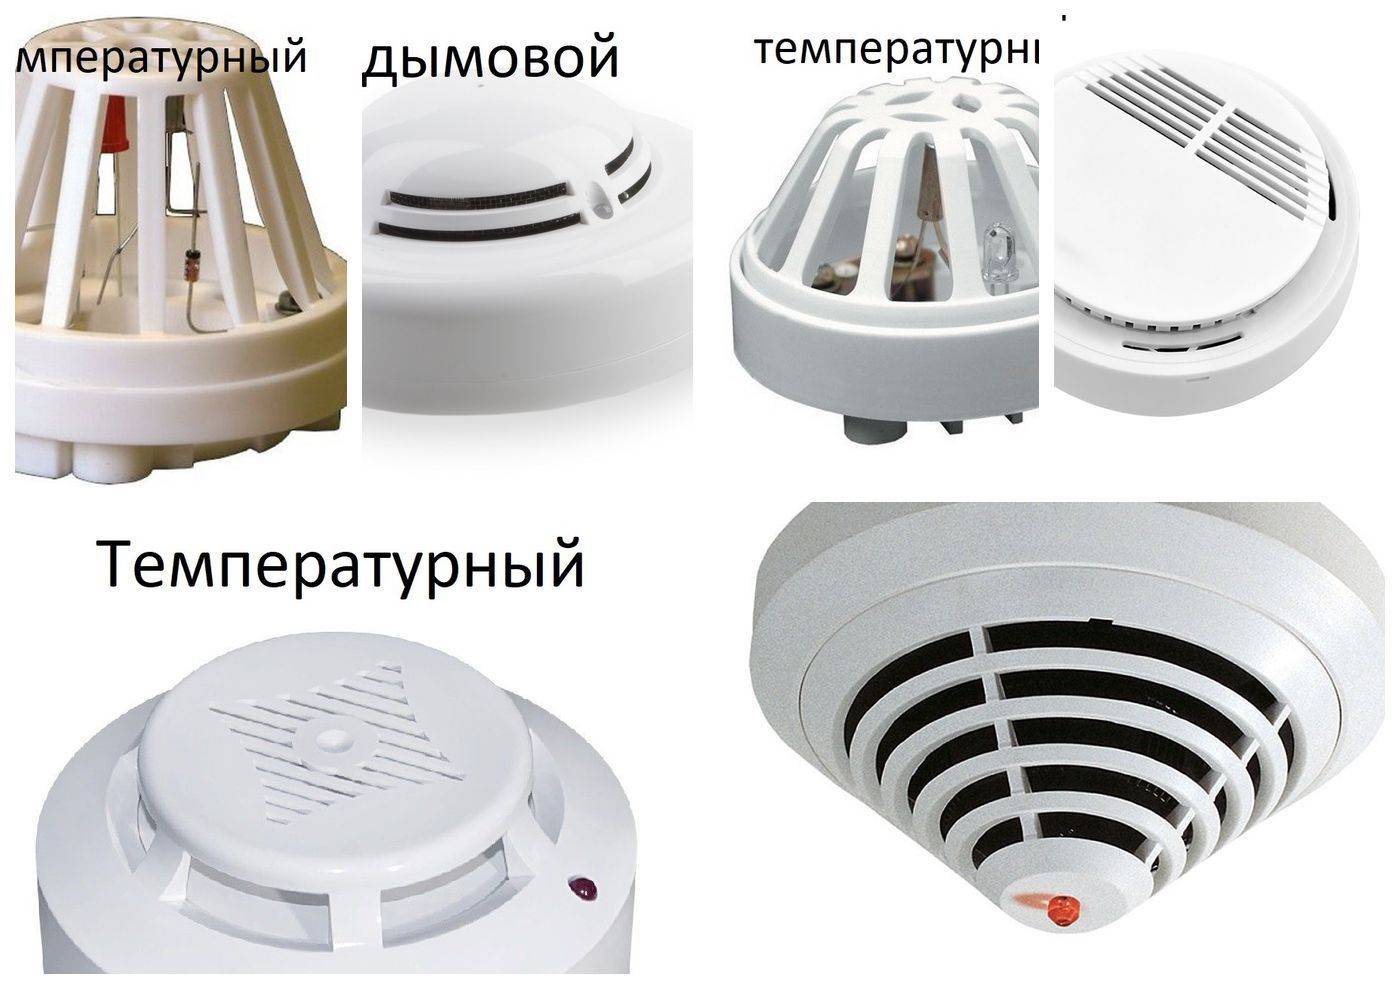 Подключение датчика температуры: советы по выбору и правильному подключению датчика (130 фото)